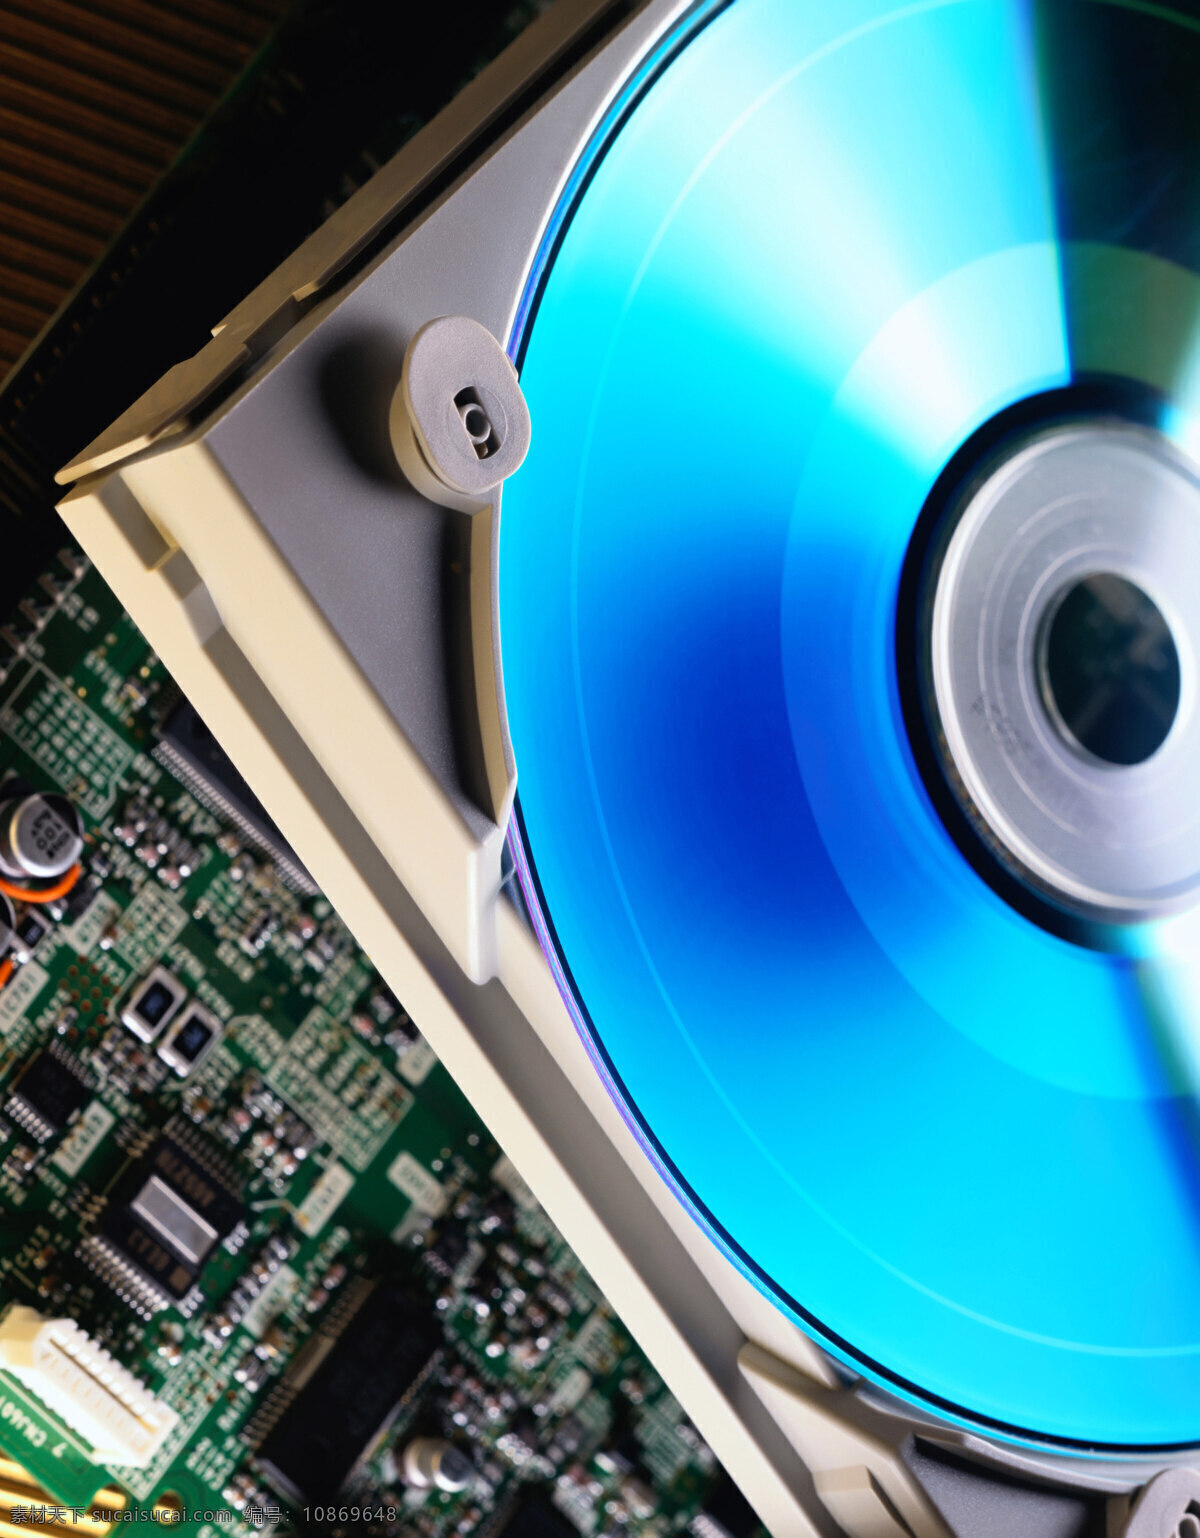 存储免费下载 cd 磁盘 存储 光碟 光盘 广告 大 辞典 数据 保存 磁碟 刻录 现代科技